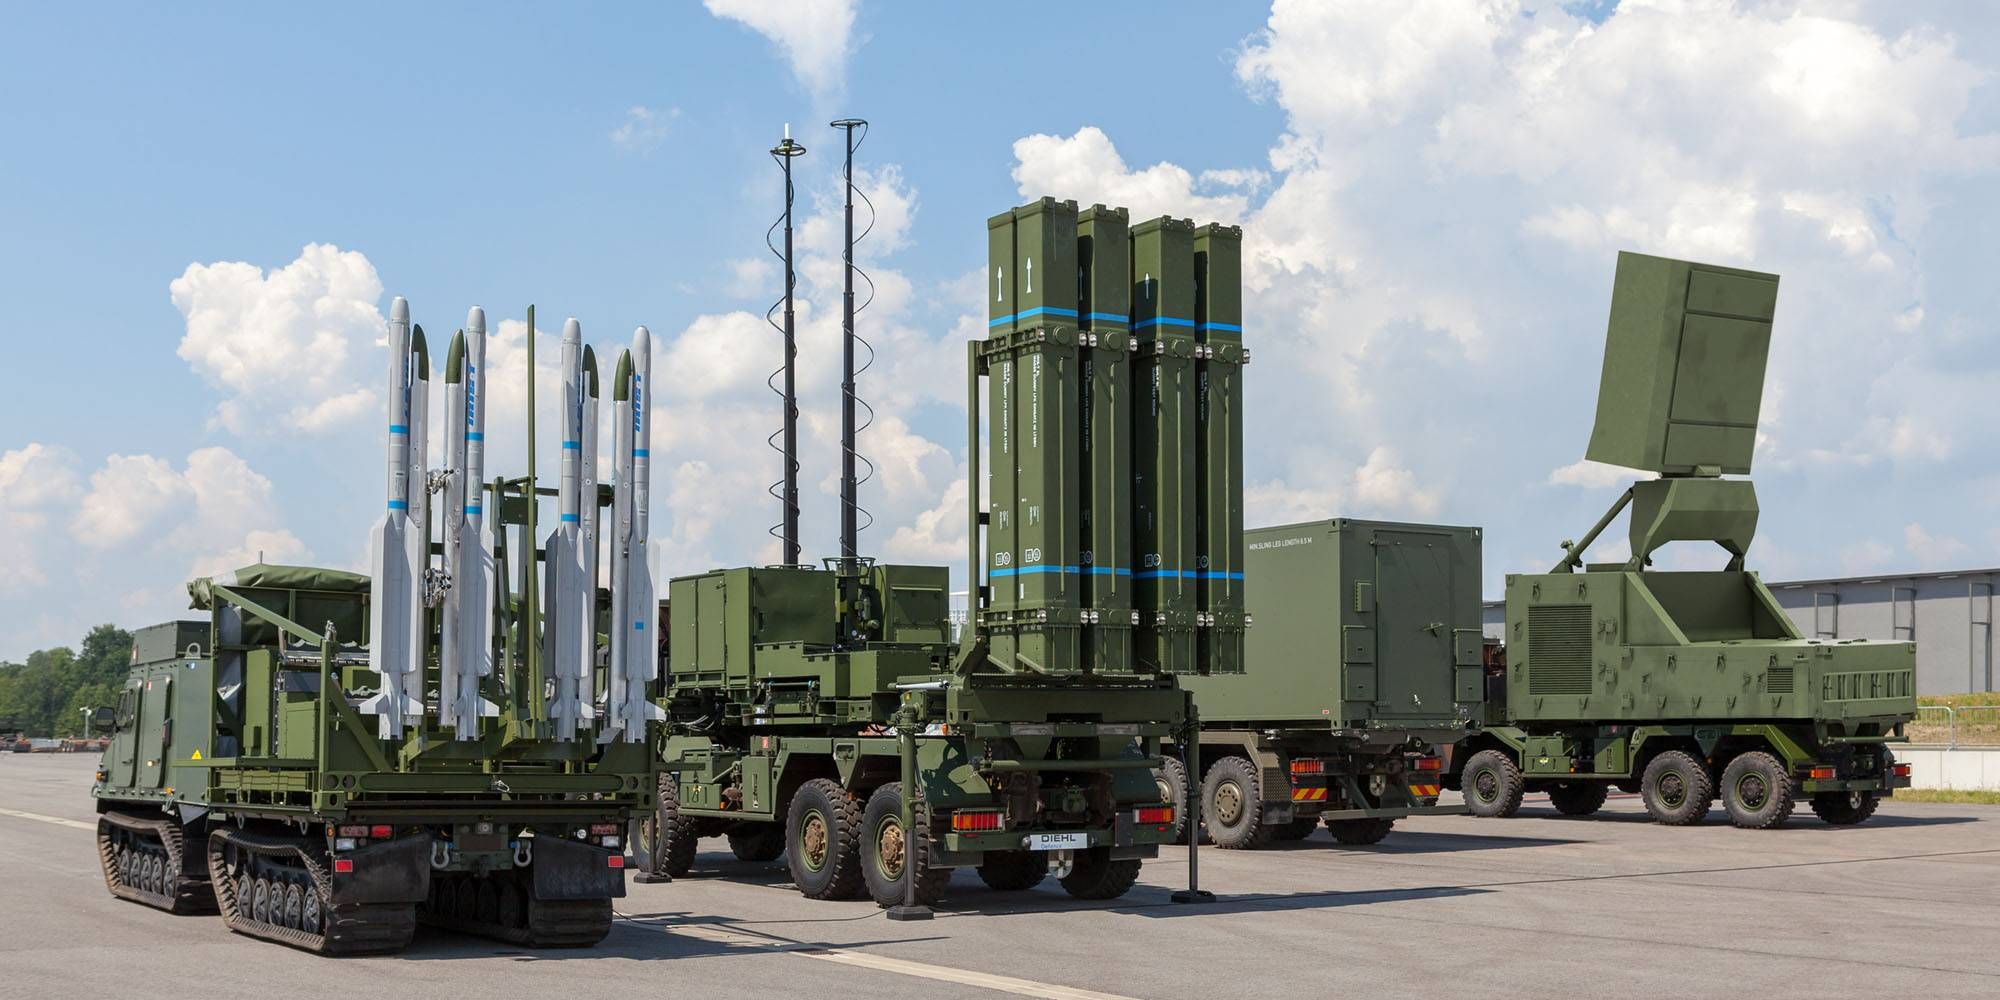 Германия решила поставить Украине современную систему ПВО: хотят передать IRIS-T